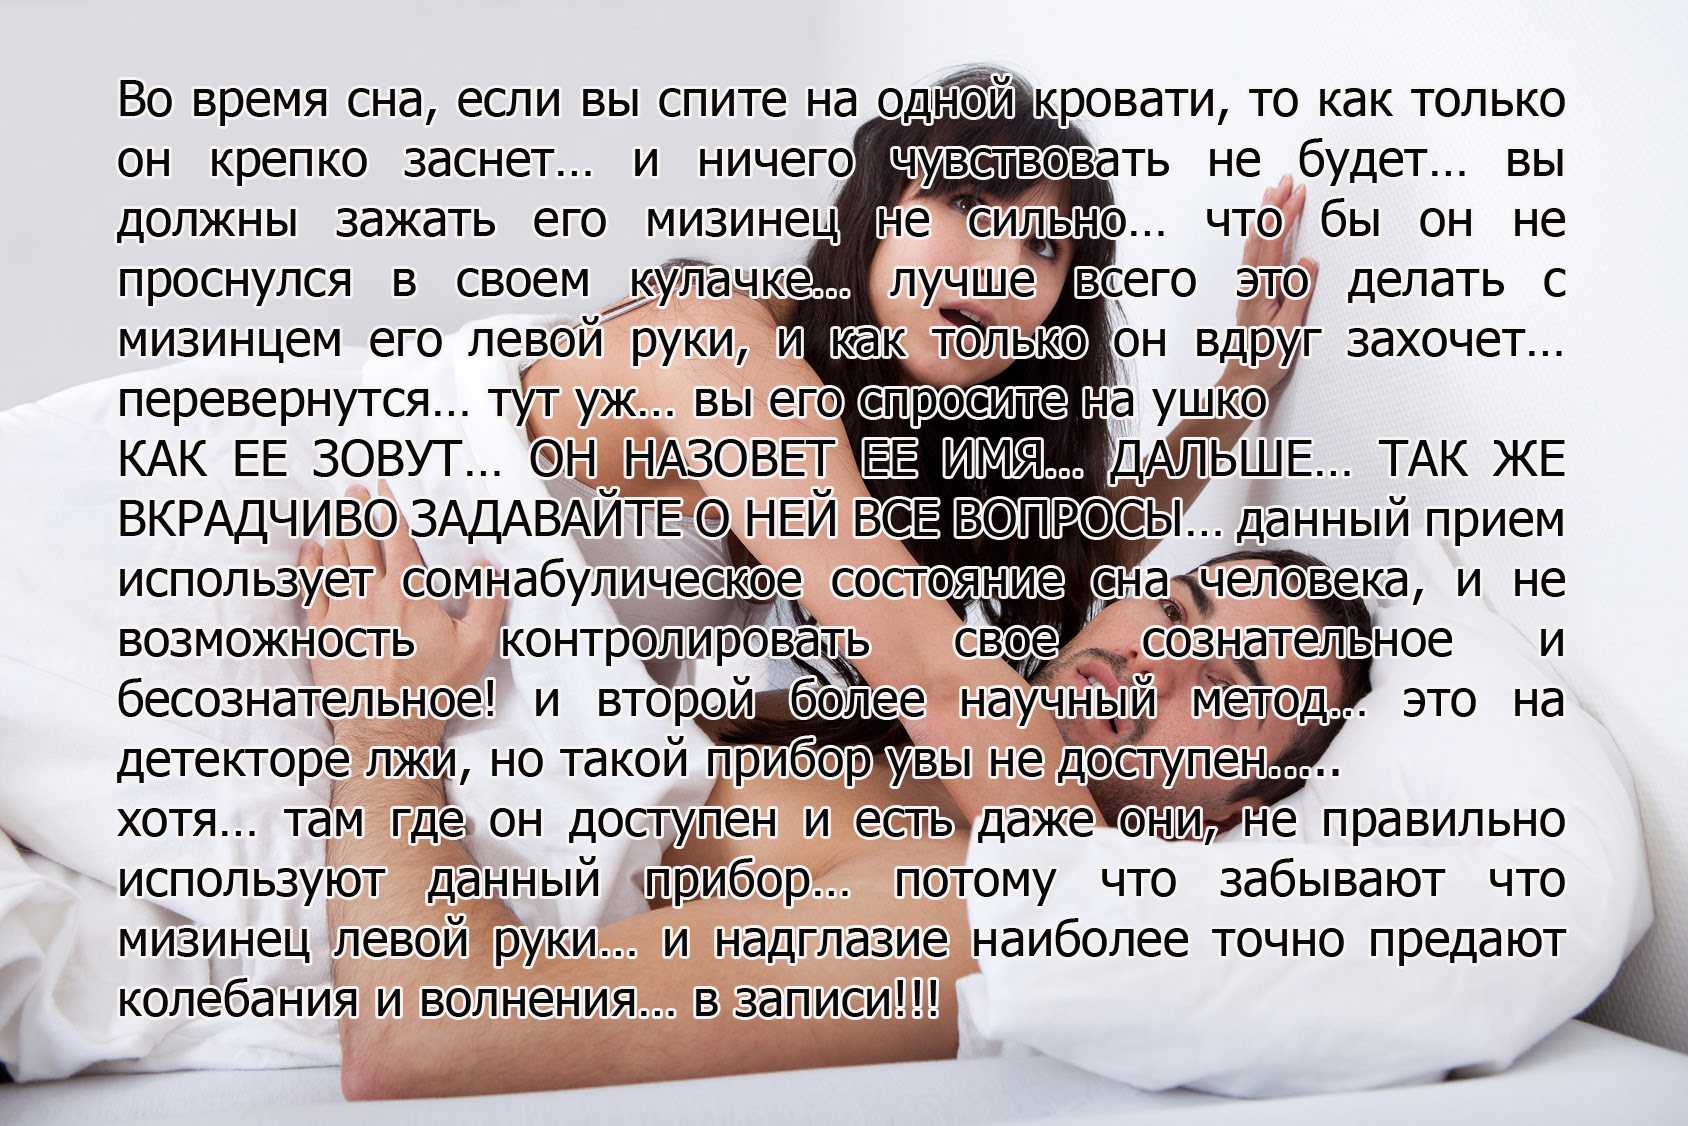 22 российских сериала про измену жены или мужа